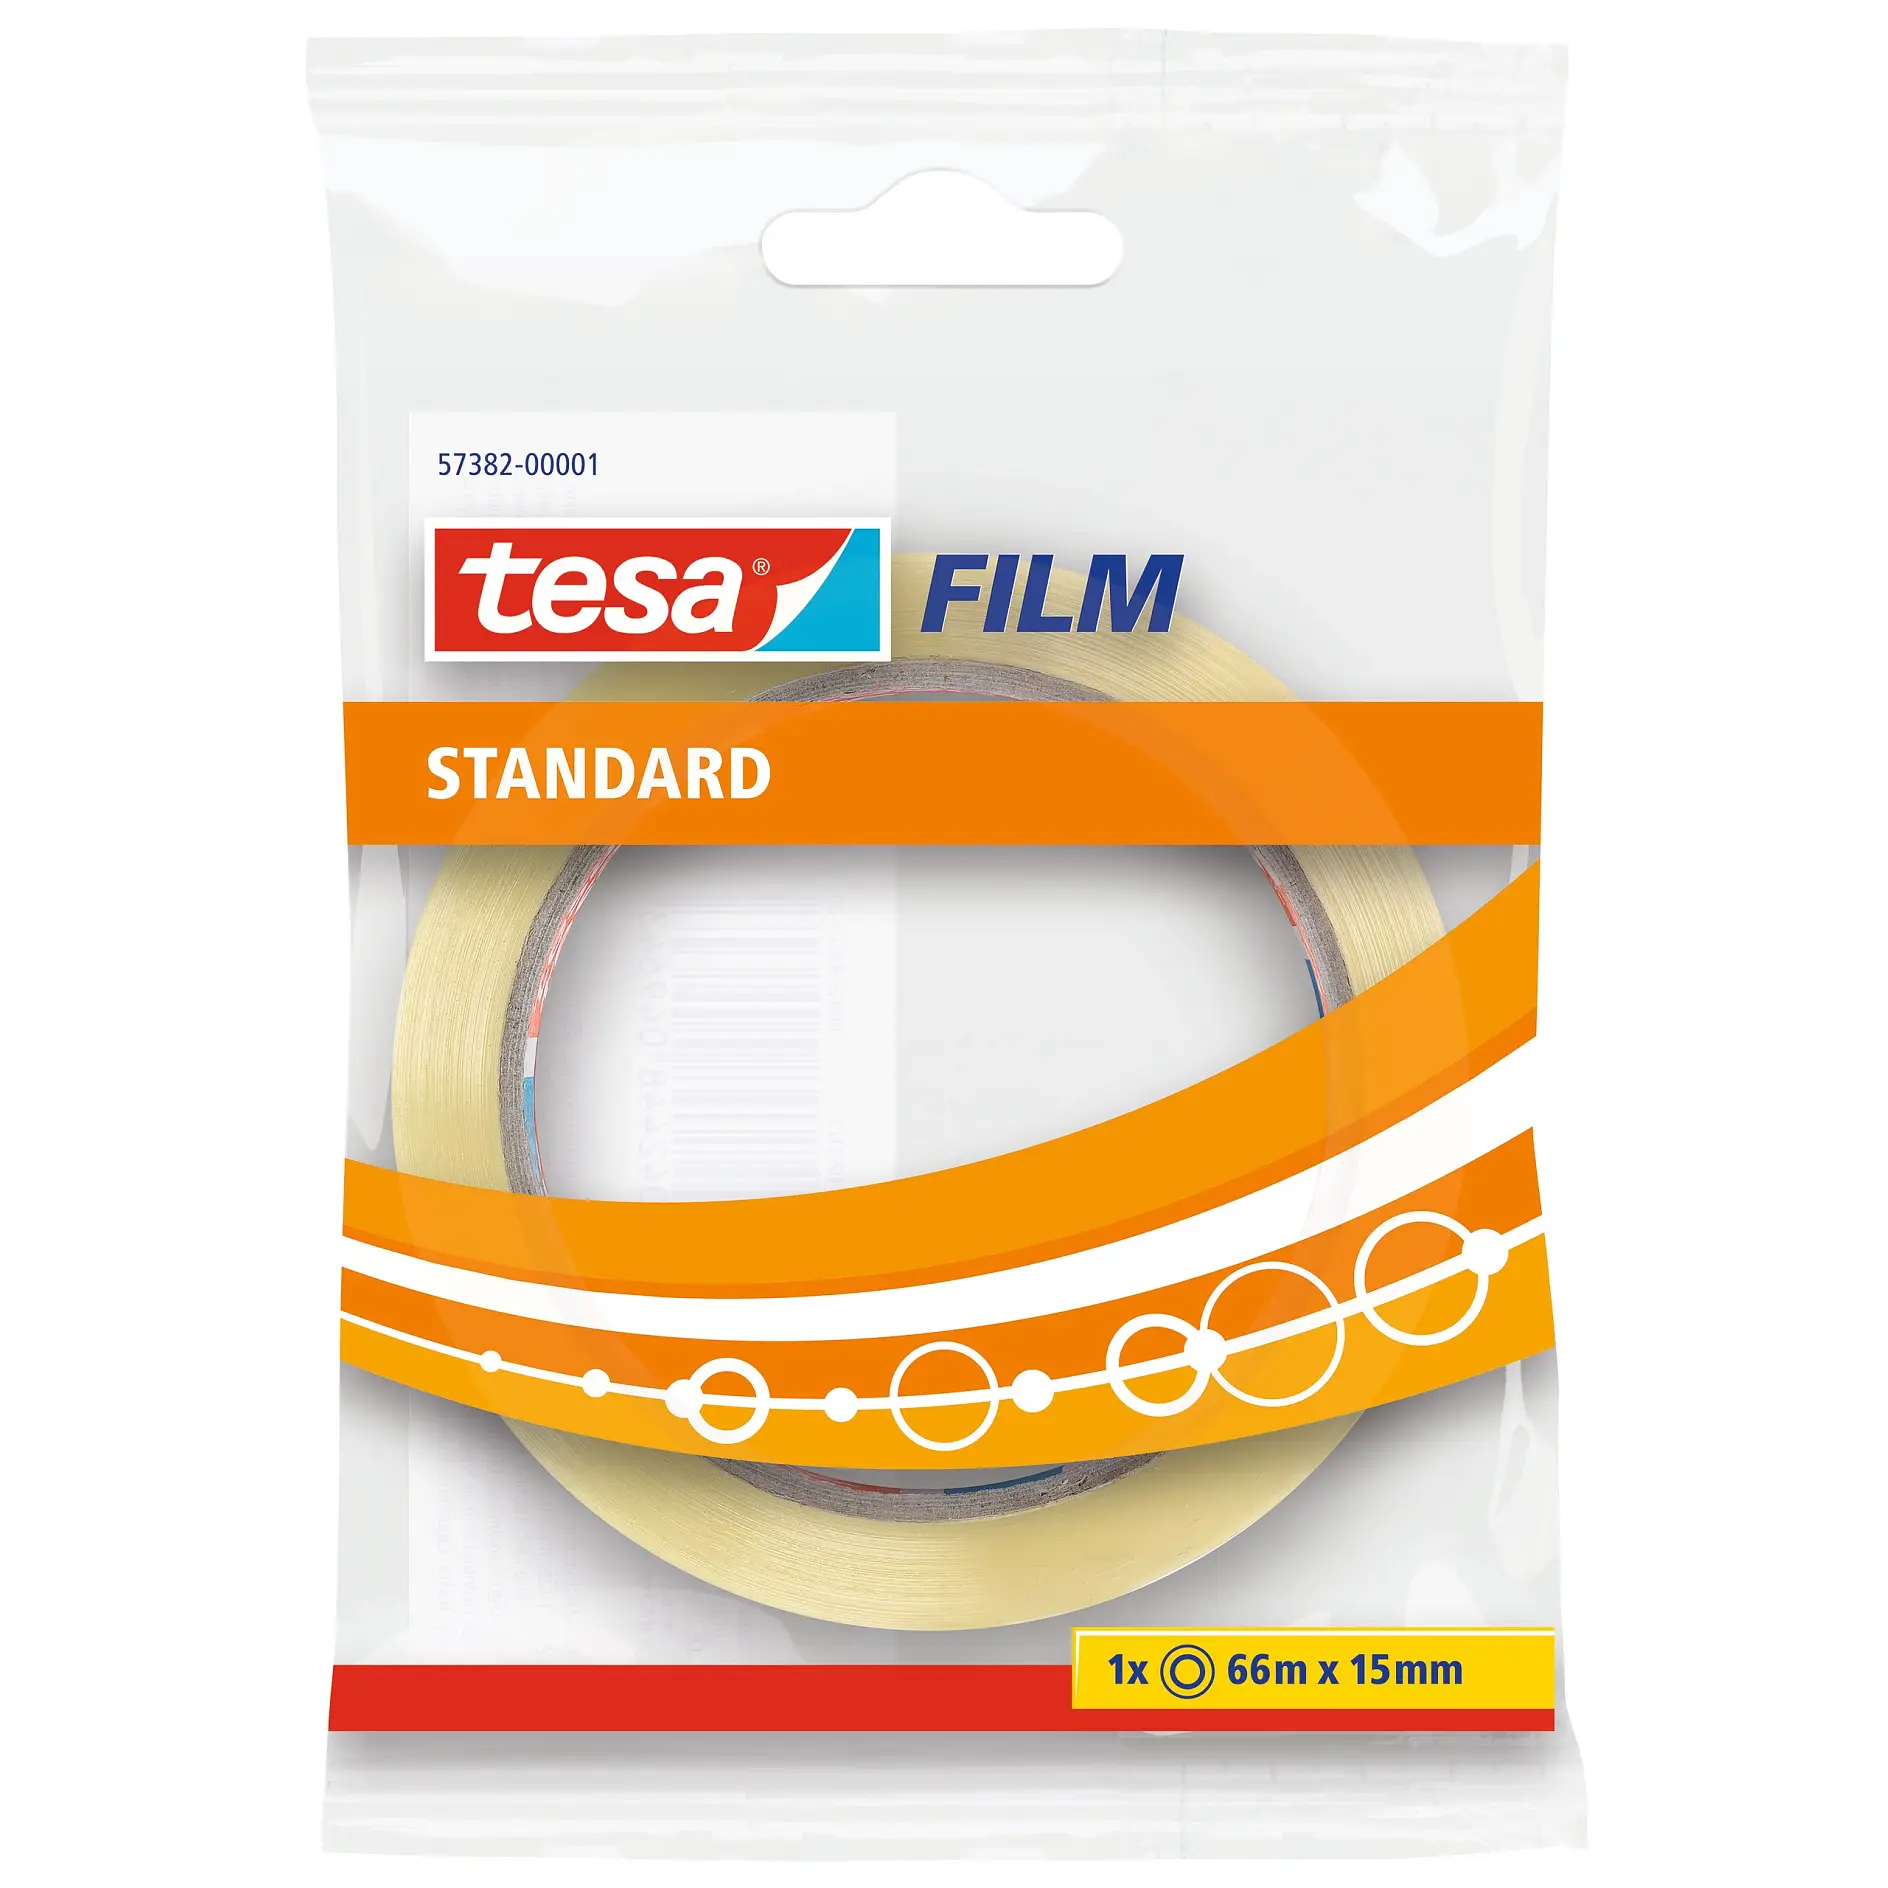 [en-en] 1 x tesafilm Standard 66m x 15mm, Hanging Flowpack